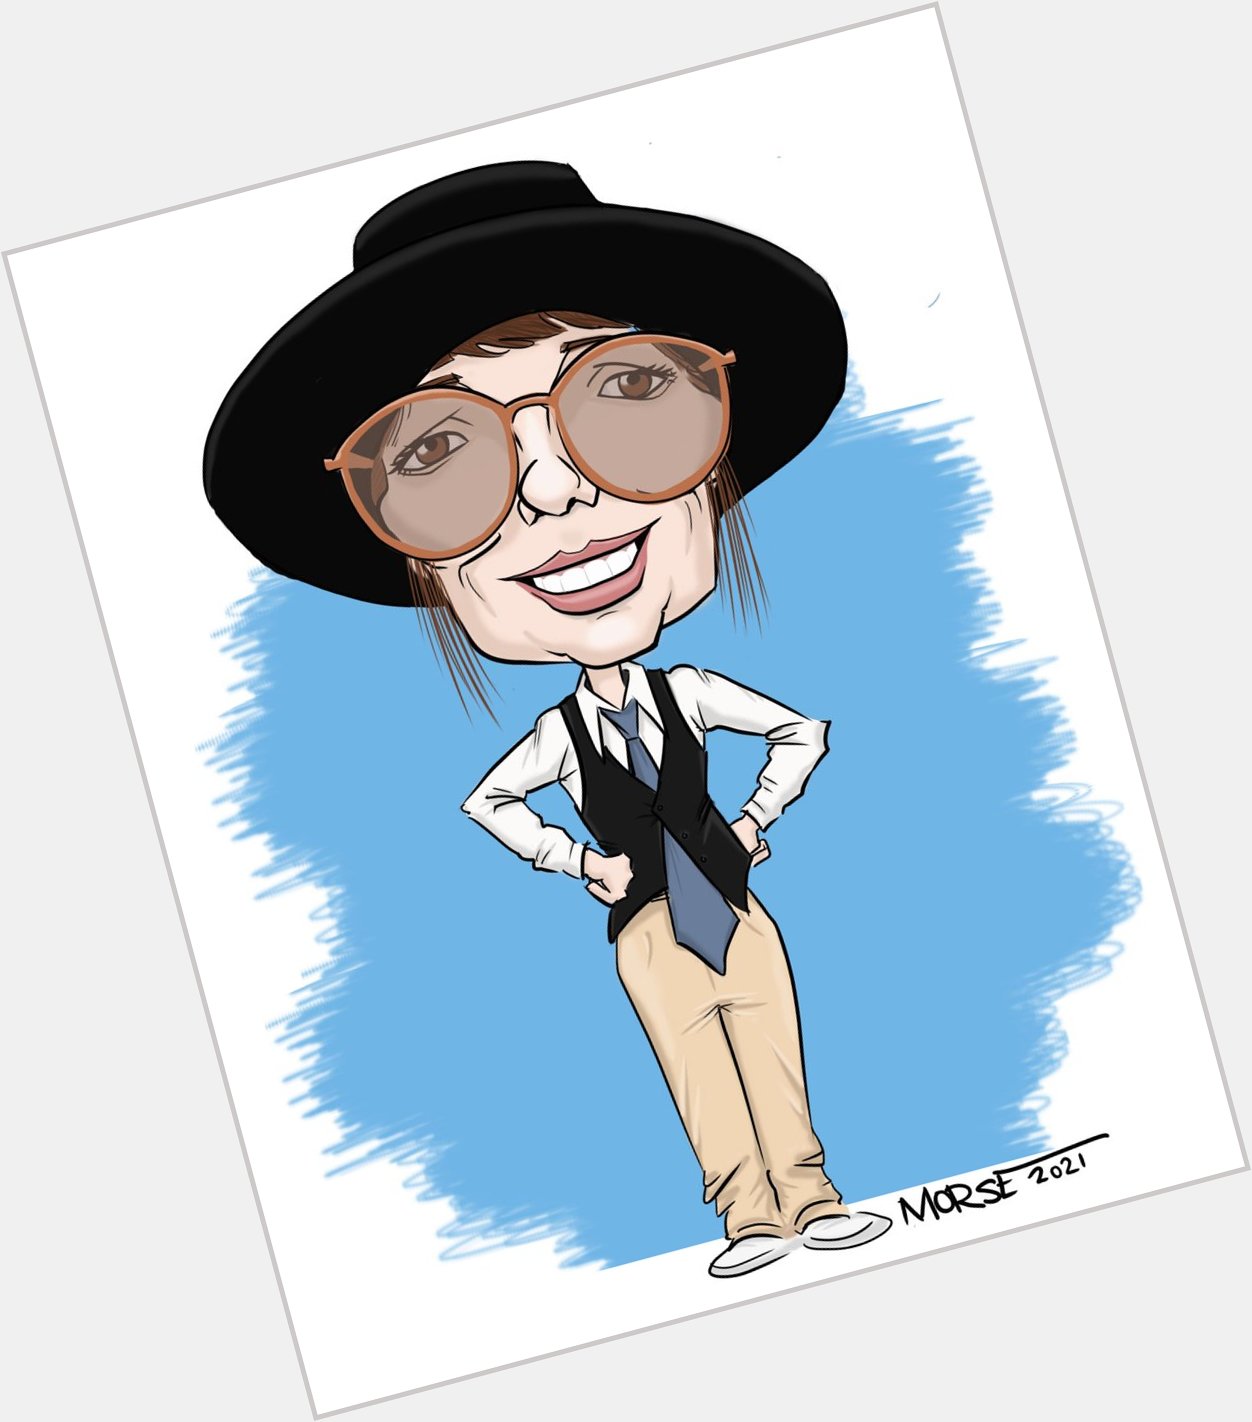 Happy Birthday to Diane Keaton! La di da, la di da... hey, want a caricature? Message me! 